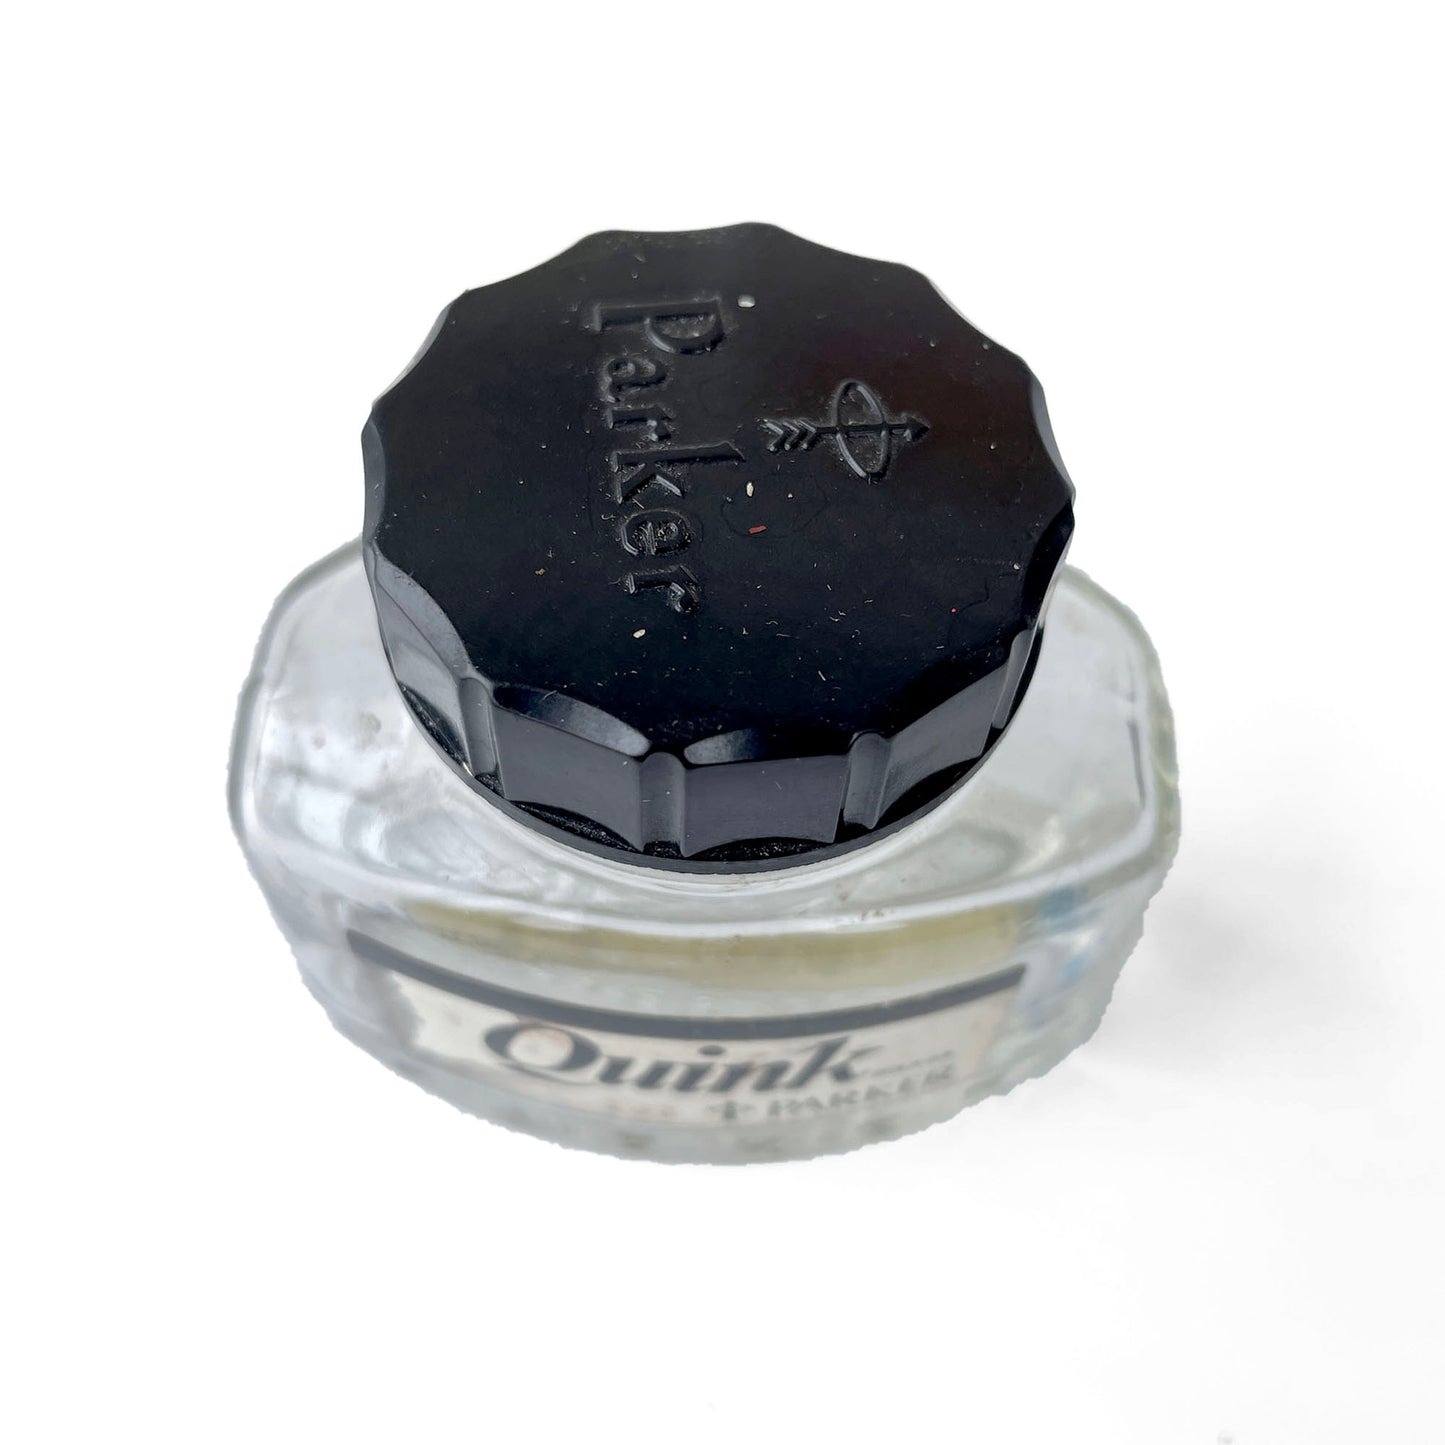 Vintage Parker Ink Bottle – Black